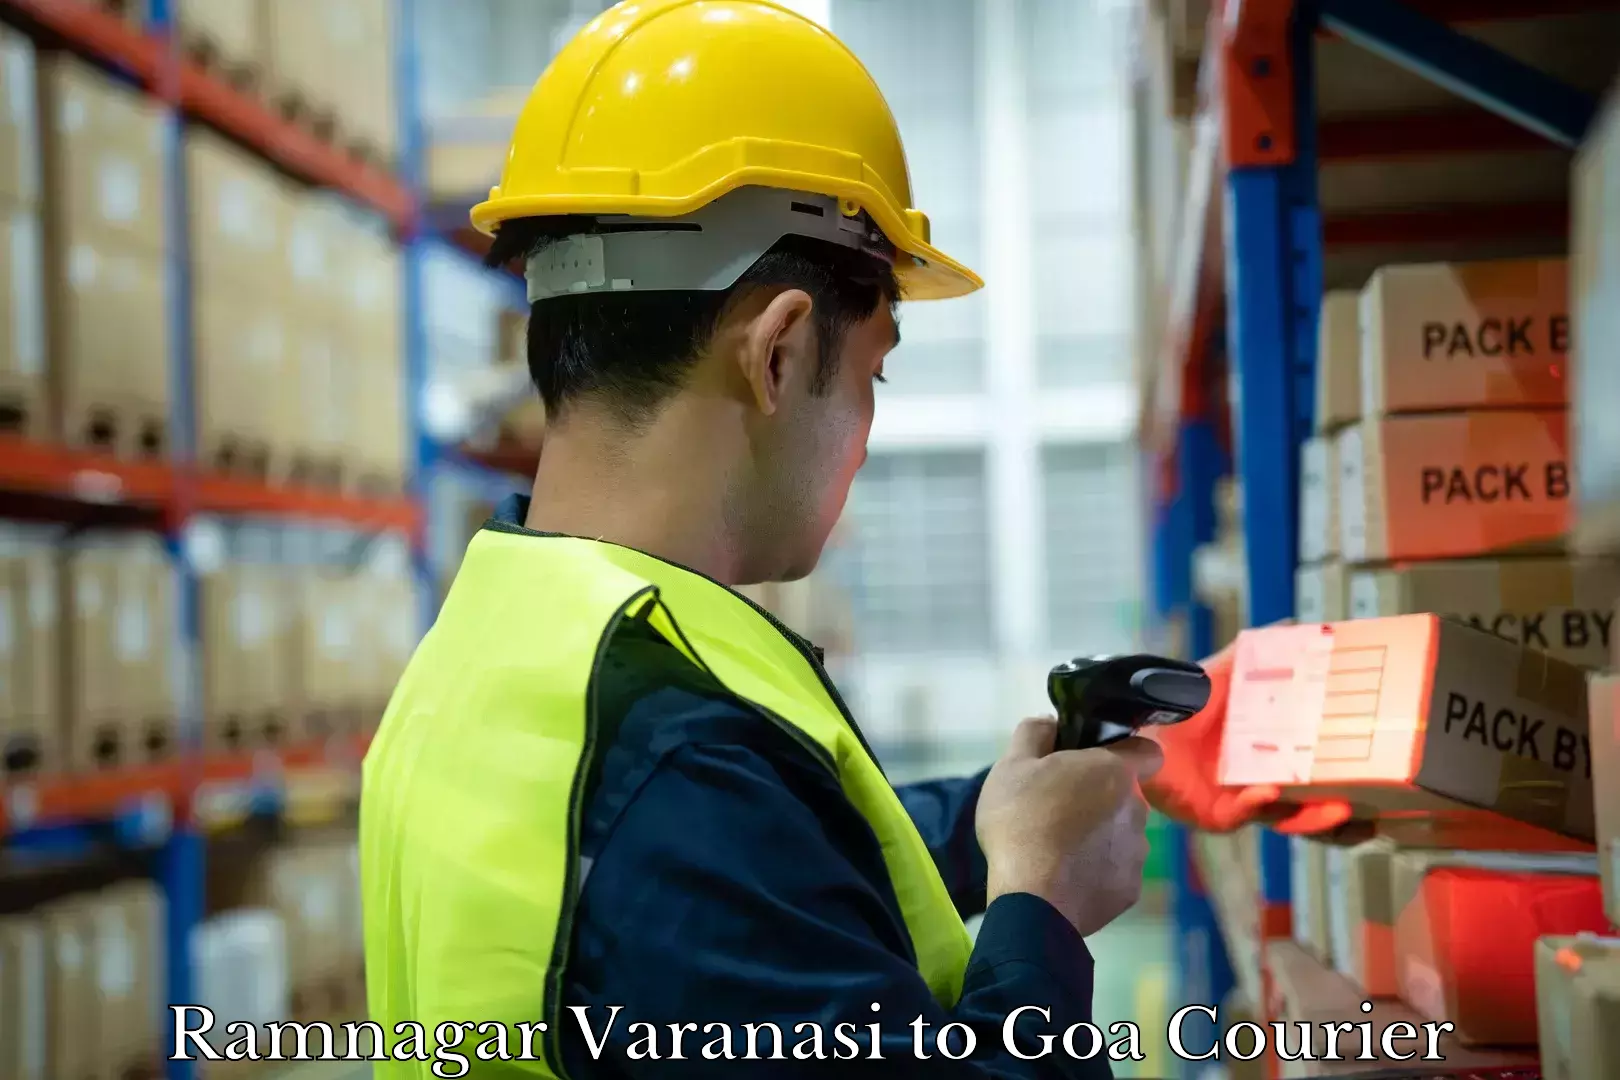 Luggage shipment specialists Ramnagar Varanasi to Vasco da Gama